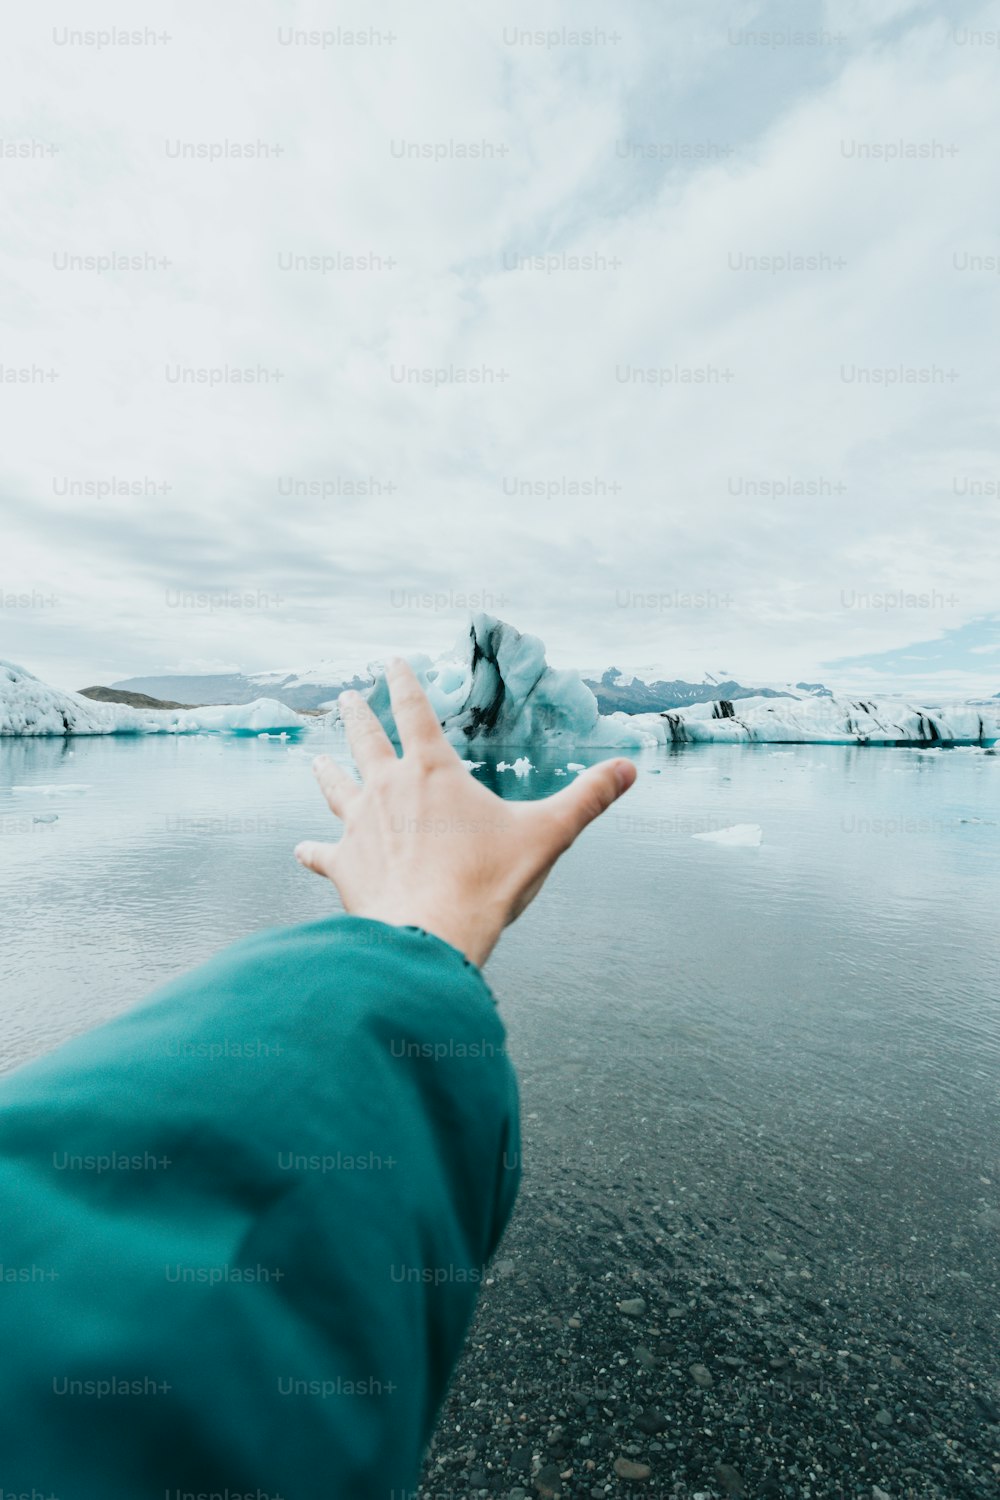 La mano di una persona che raggiunge un iceberg nell'acqua